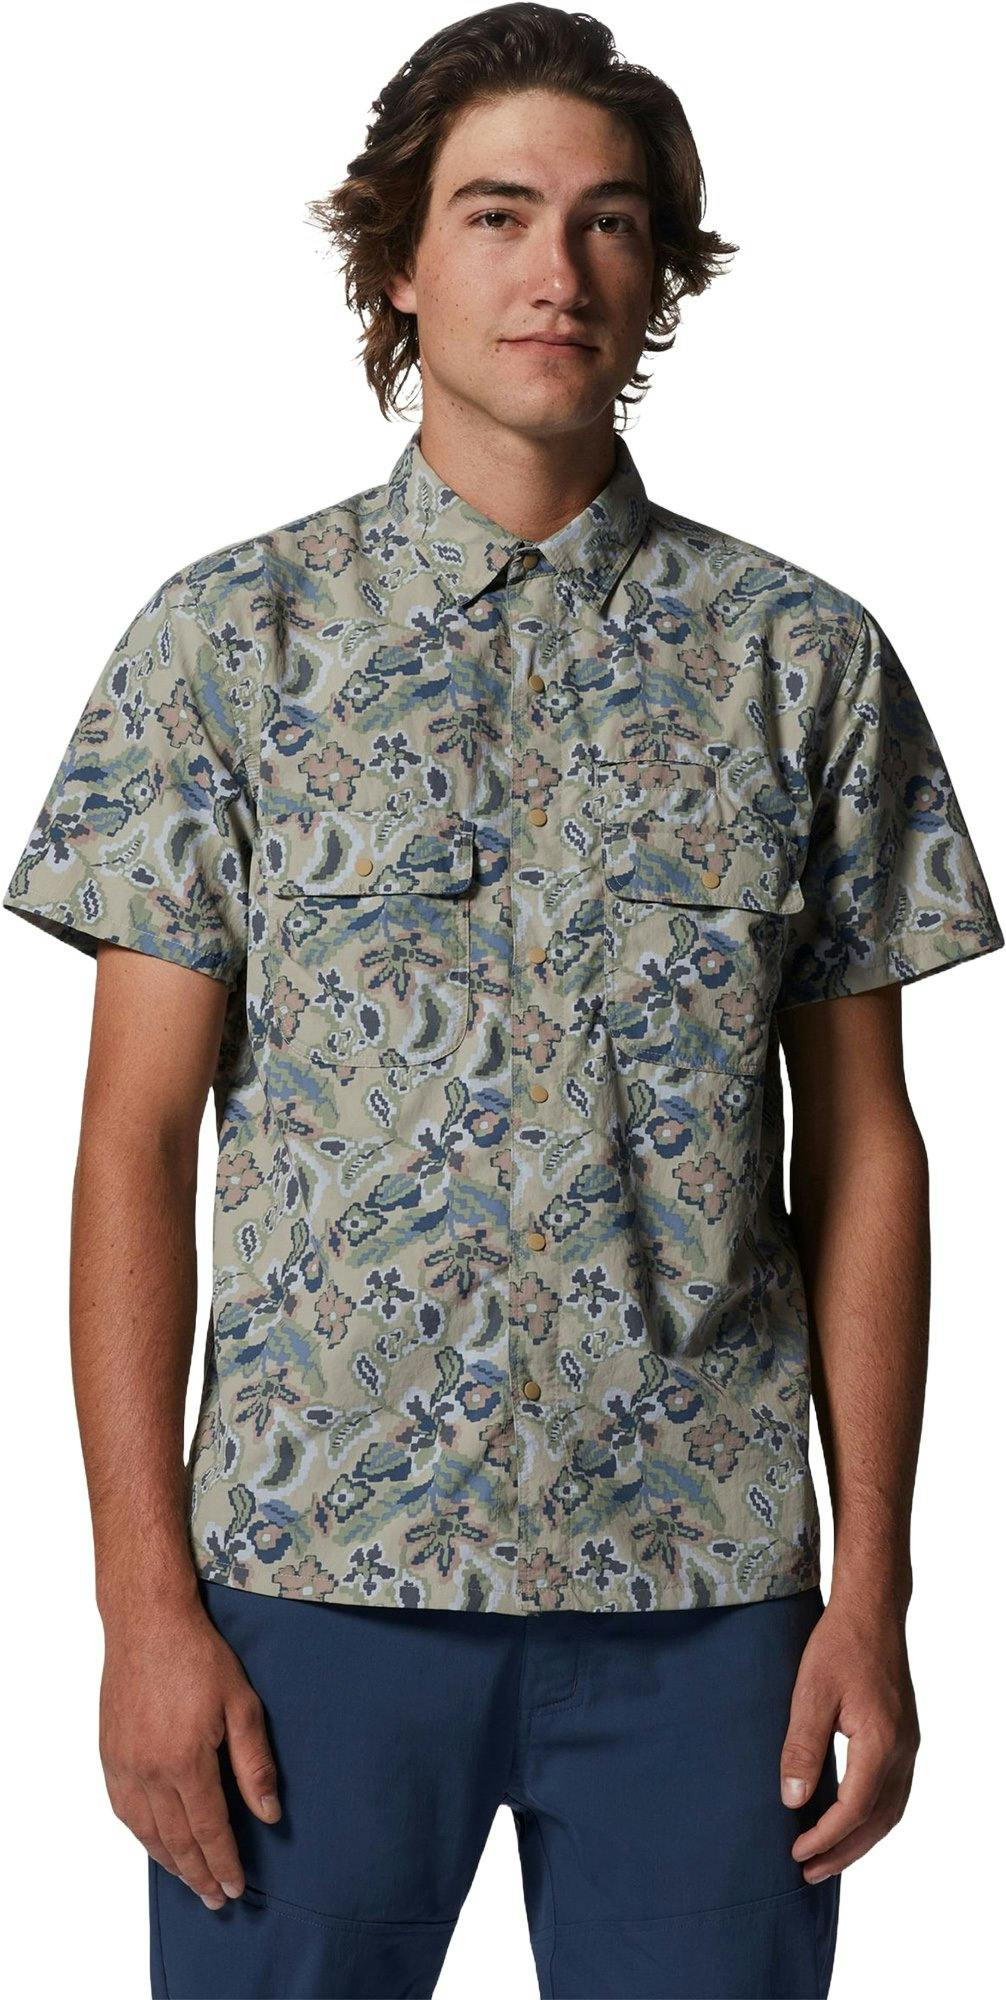 Product image for Stryder Short Sleeve Shirt - Men's